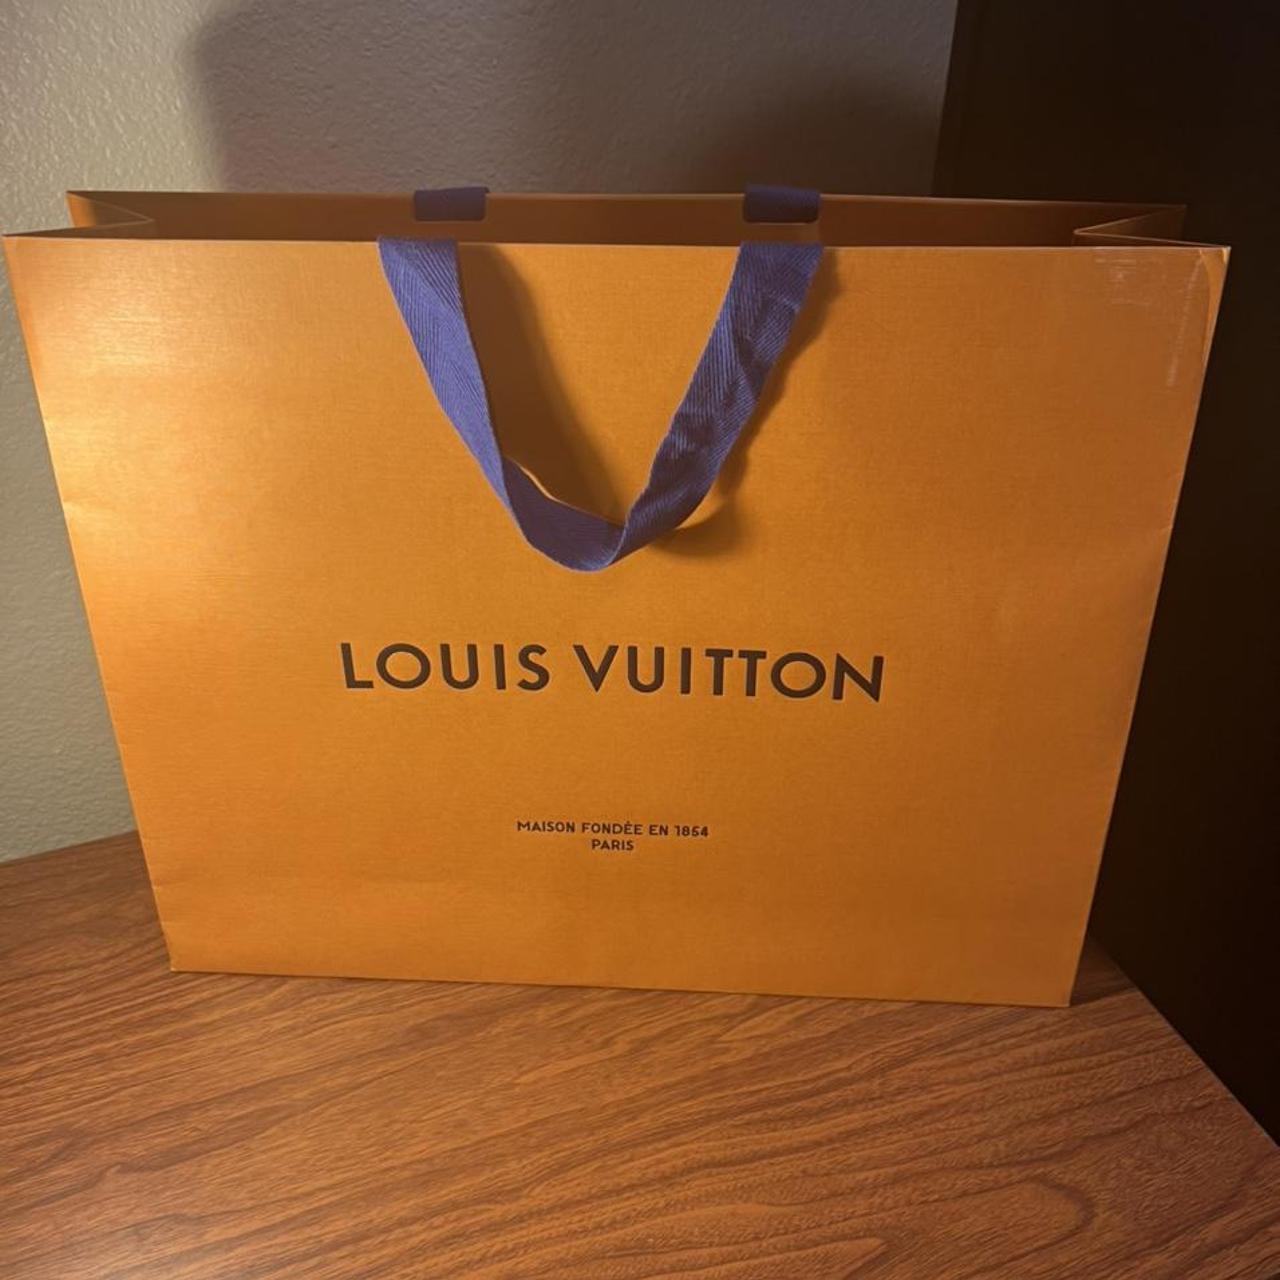 LOUIS VUITTON ORANGE SHOPPING BAG 100% AUTHENTIC - Depop